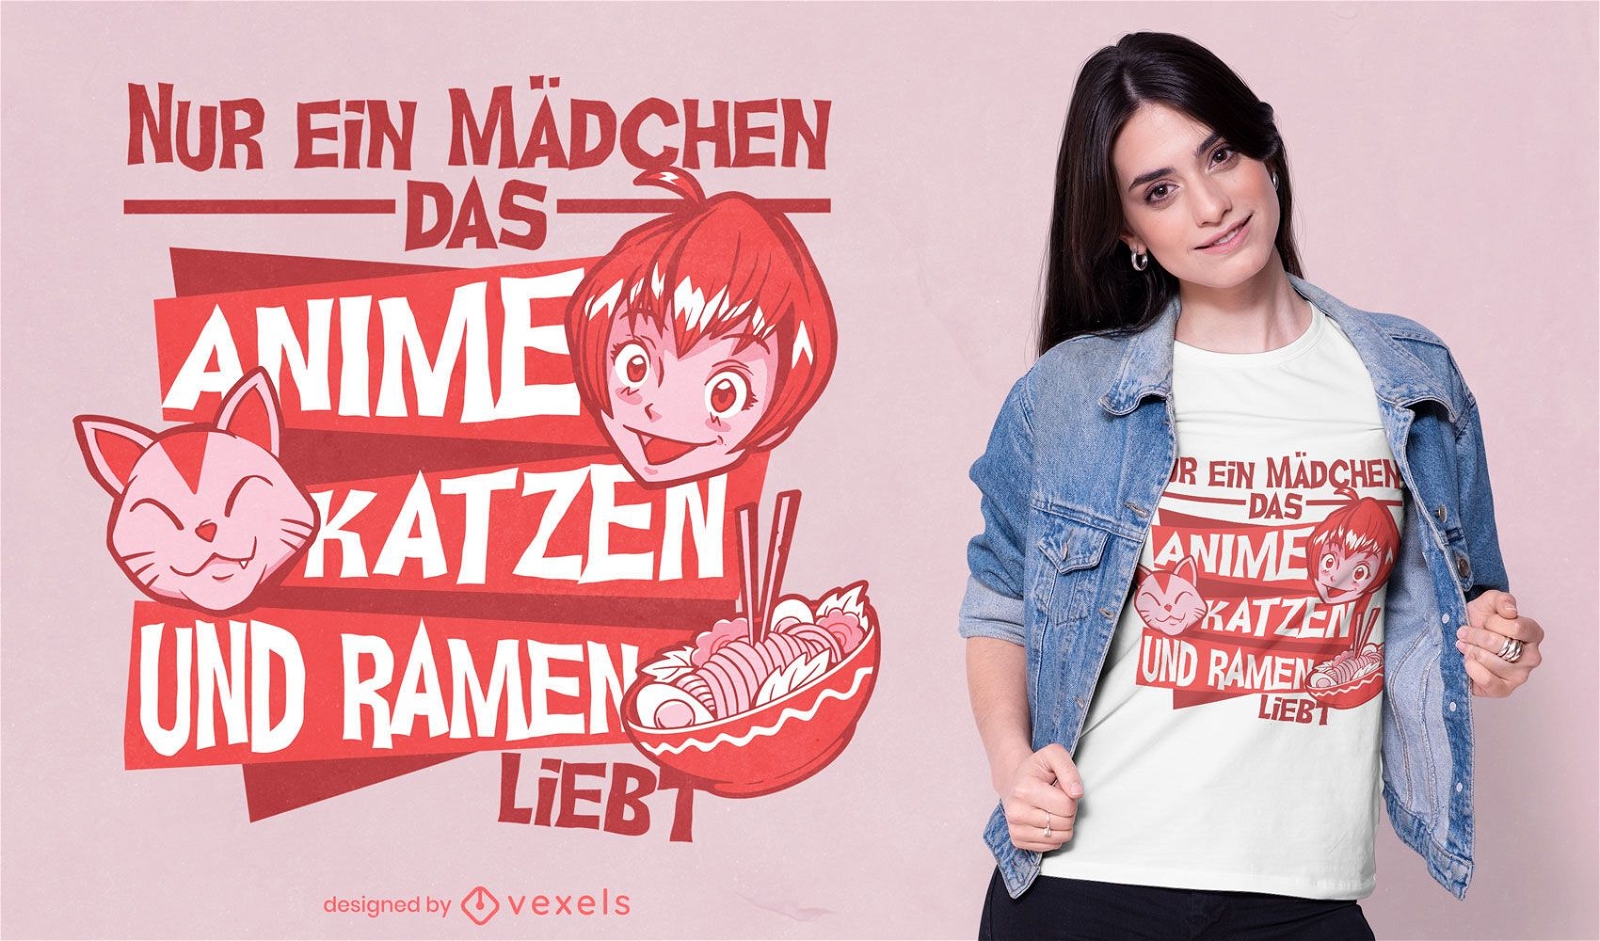 REQUEST Girl adora gatos e design de camiseta com citação de ramen